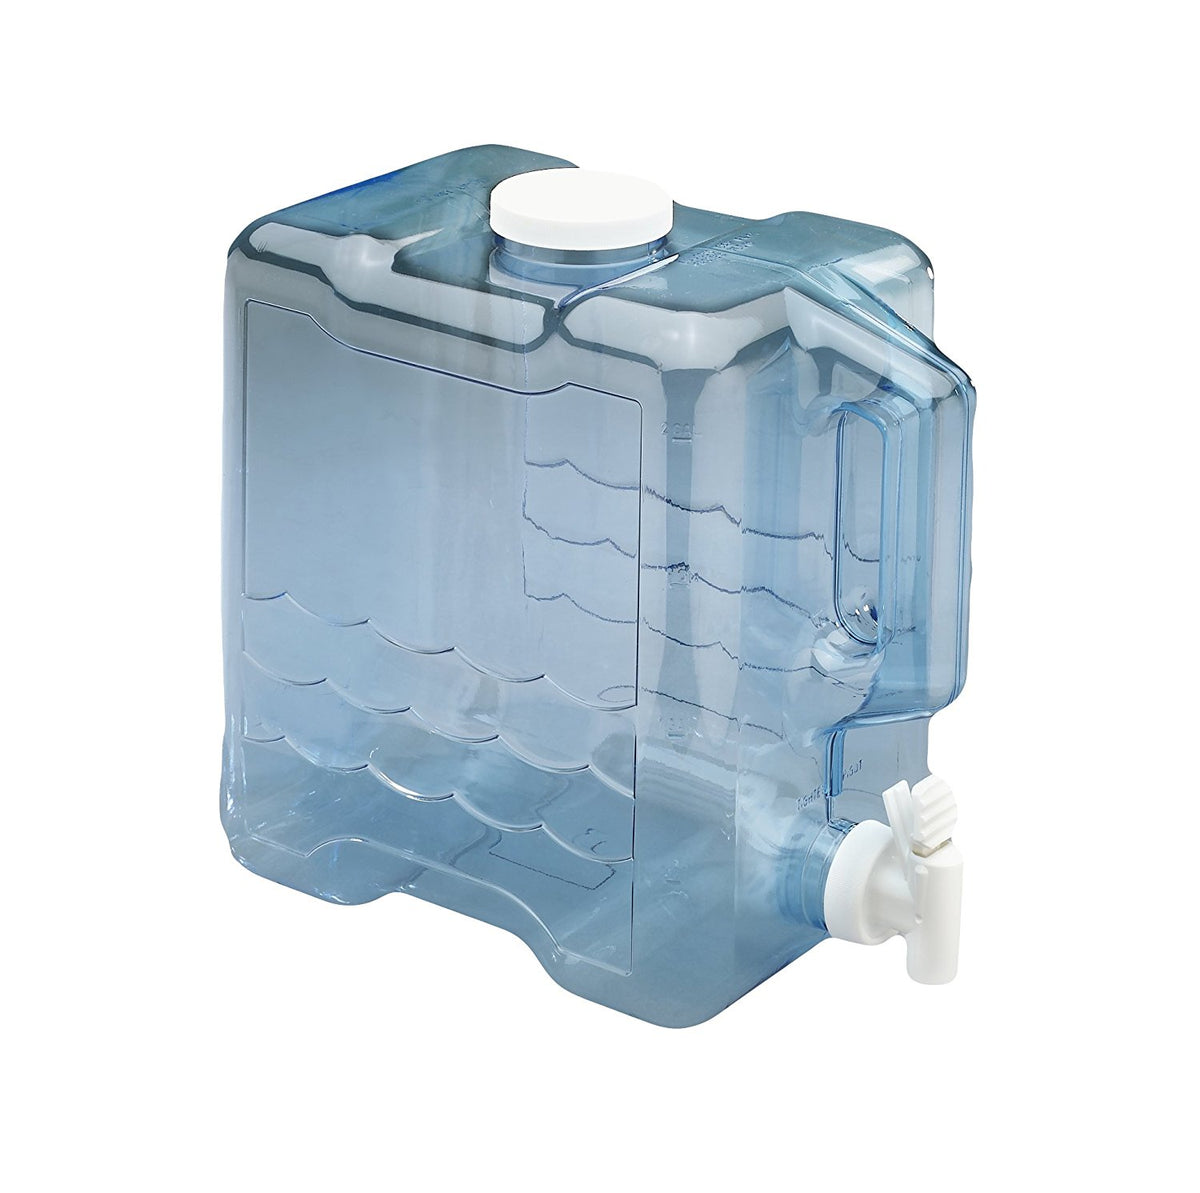 Arrow 2 Gallon Drink Dispenser for Fridge - Plastic Beverage